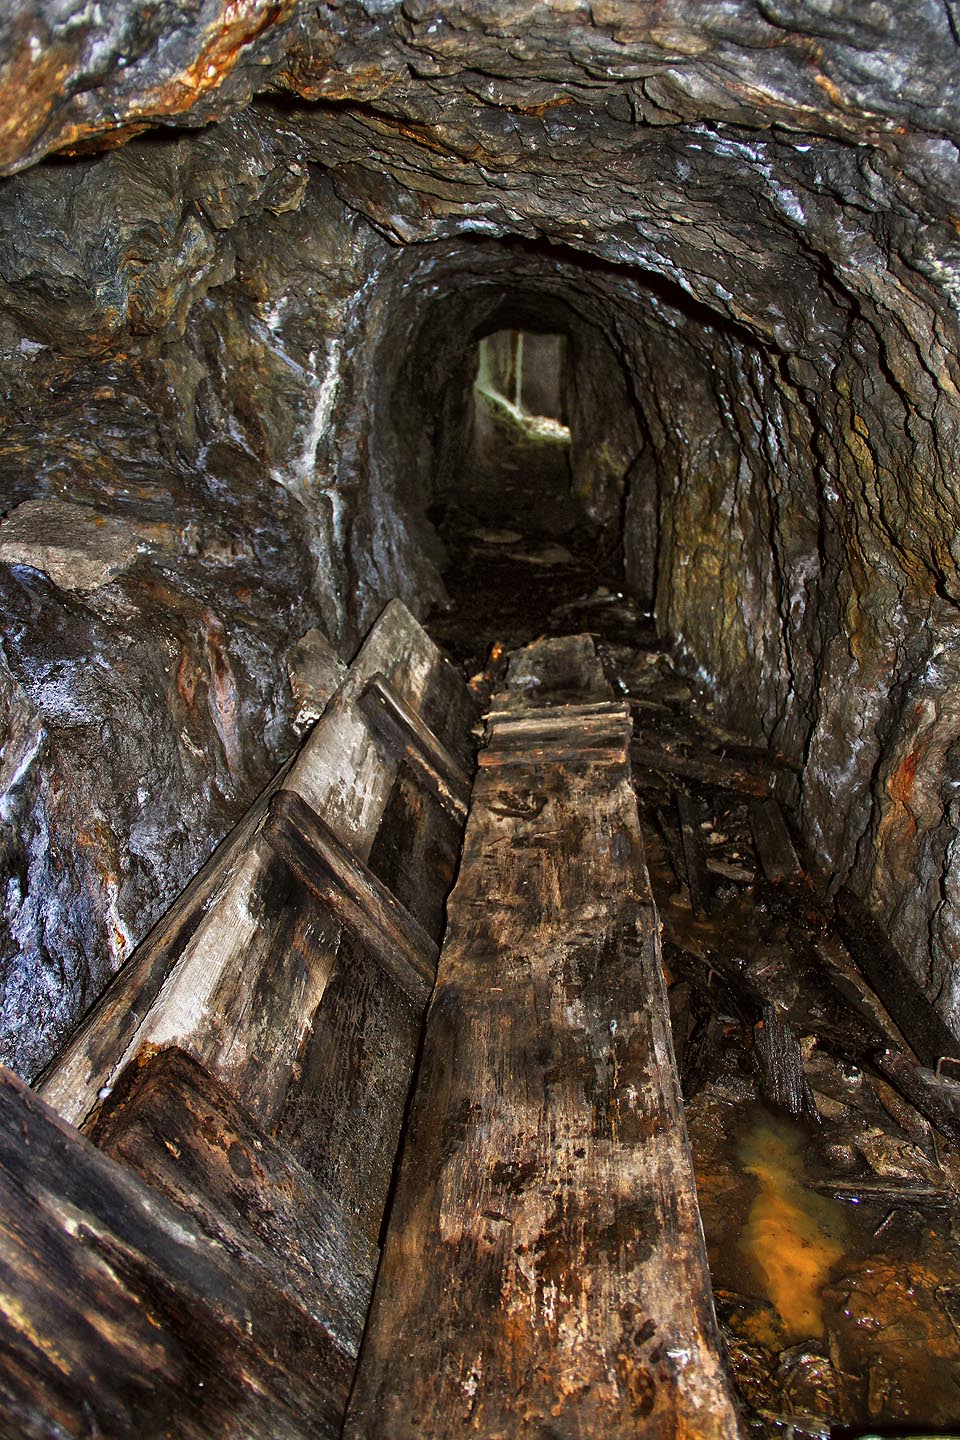 Vzhledem k hladině podzemní vody ve štole, nanosili dovnitř návštěvníci řadu dřevěných či kamenných pomůcek k překonávání zatopených míst.